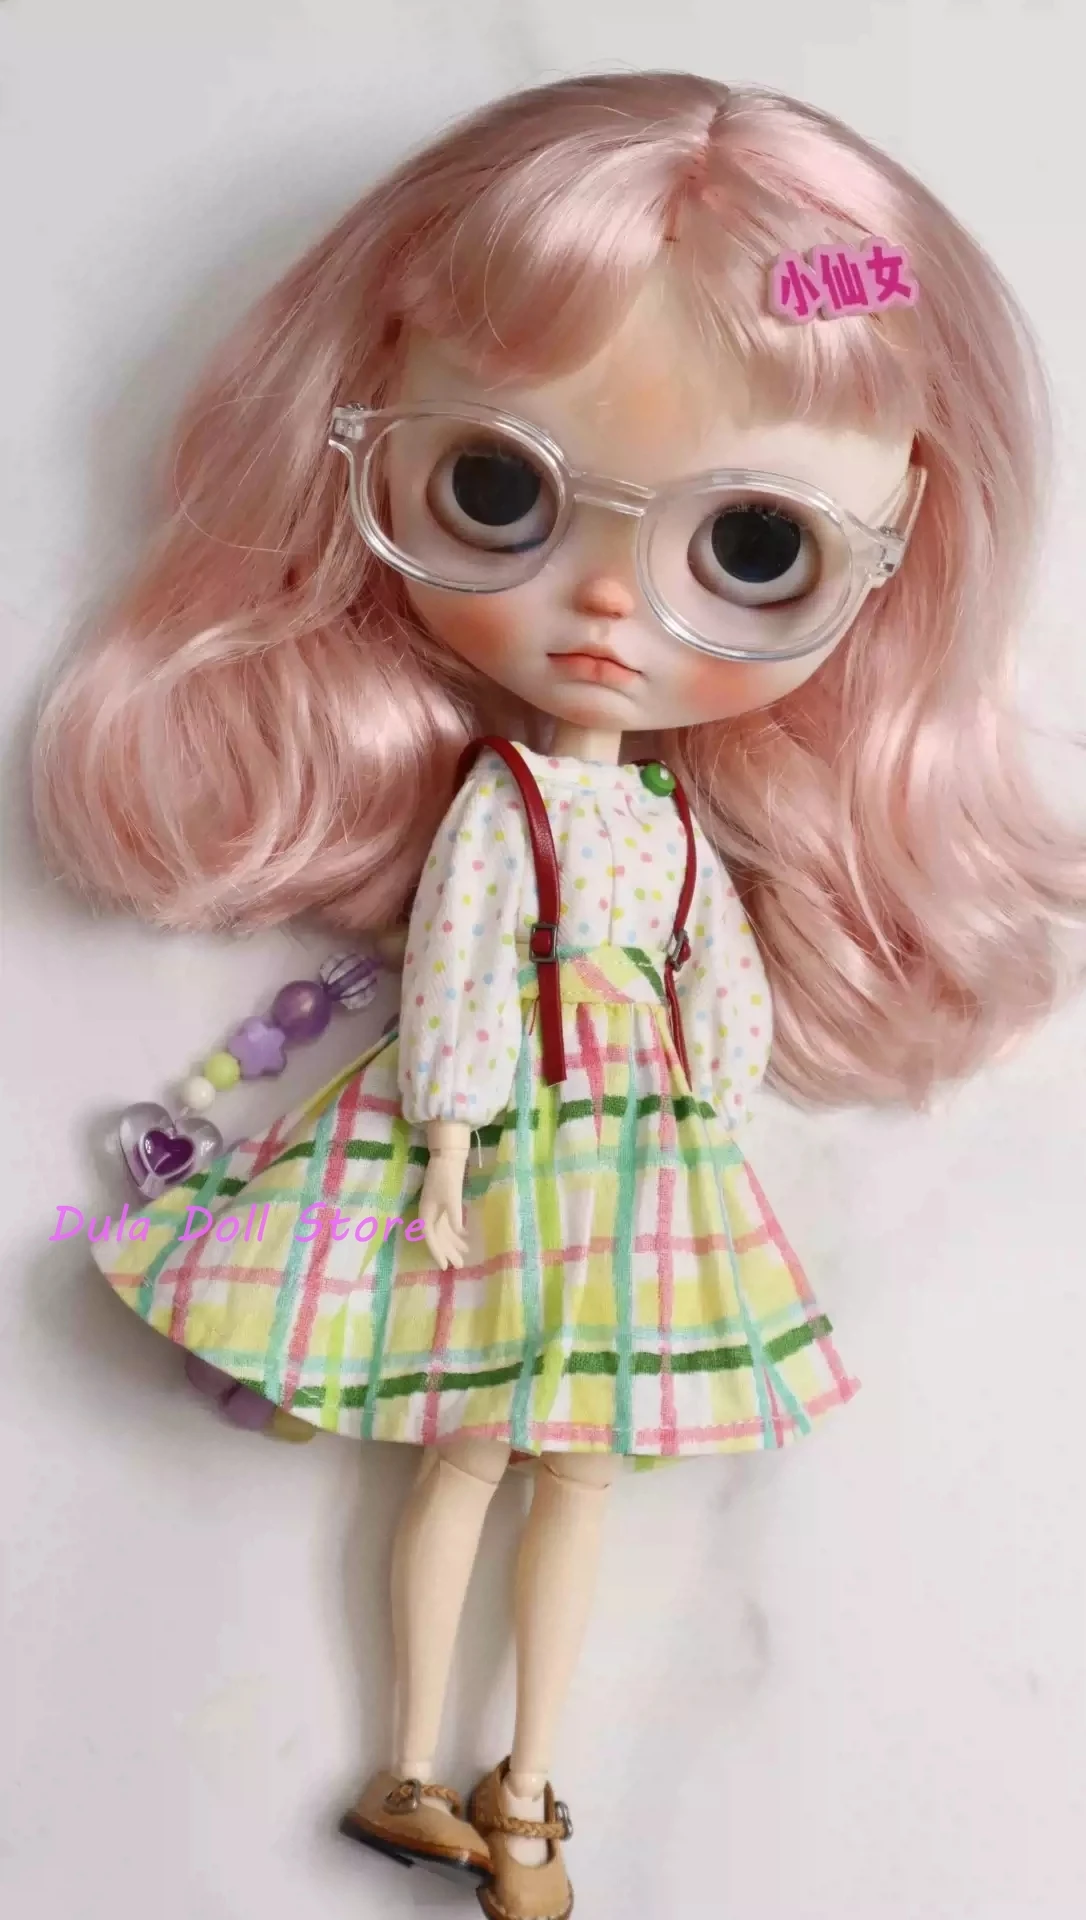 

Кукла Dula одежда платье Радуга юбка комплект Blythe Qbaby ob24 ob22 Azone Licca ICY jerfish 1/6 Bjd кукла